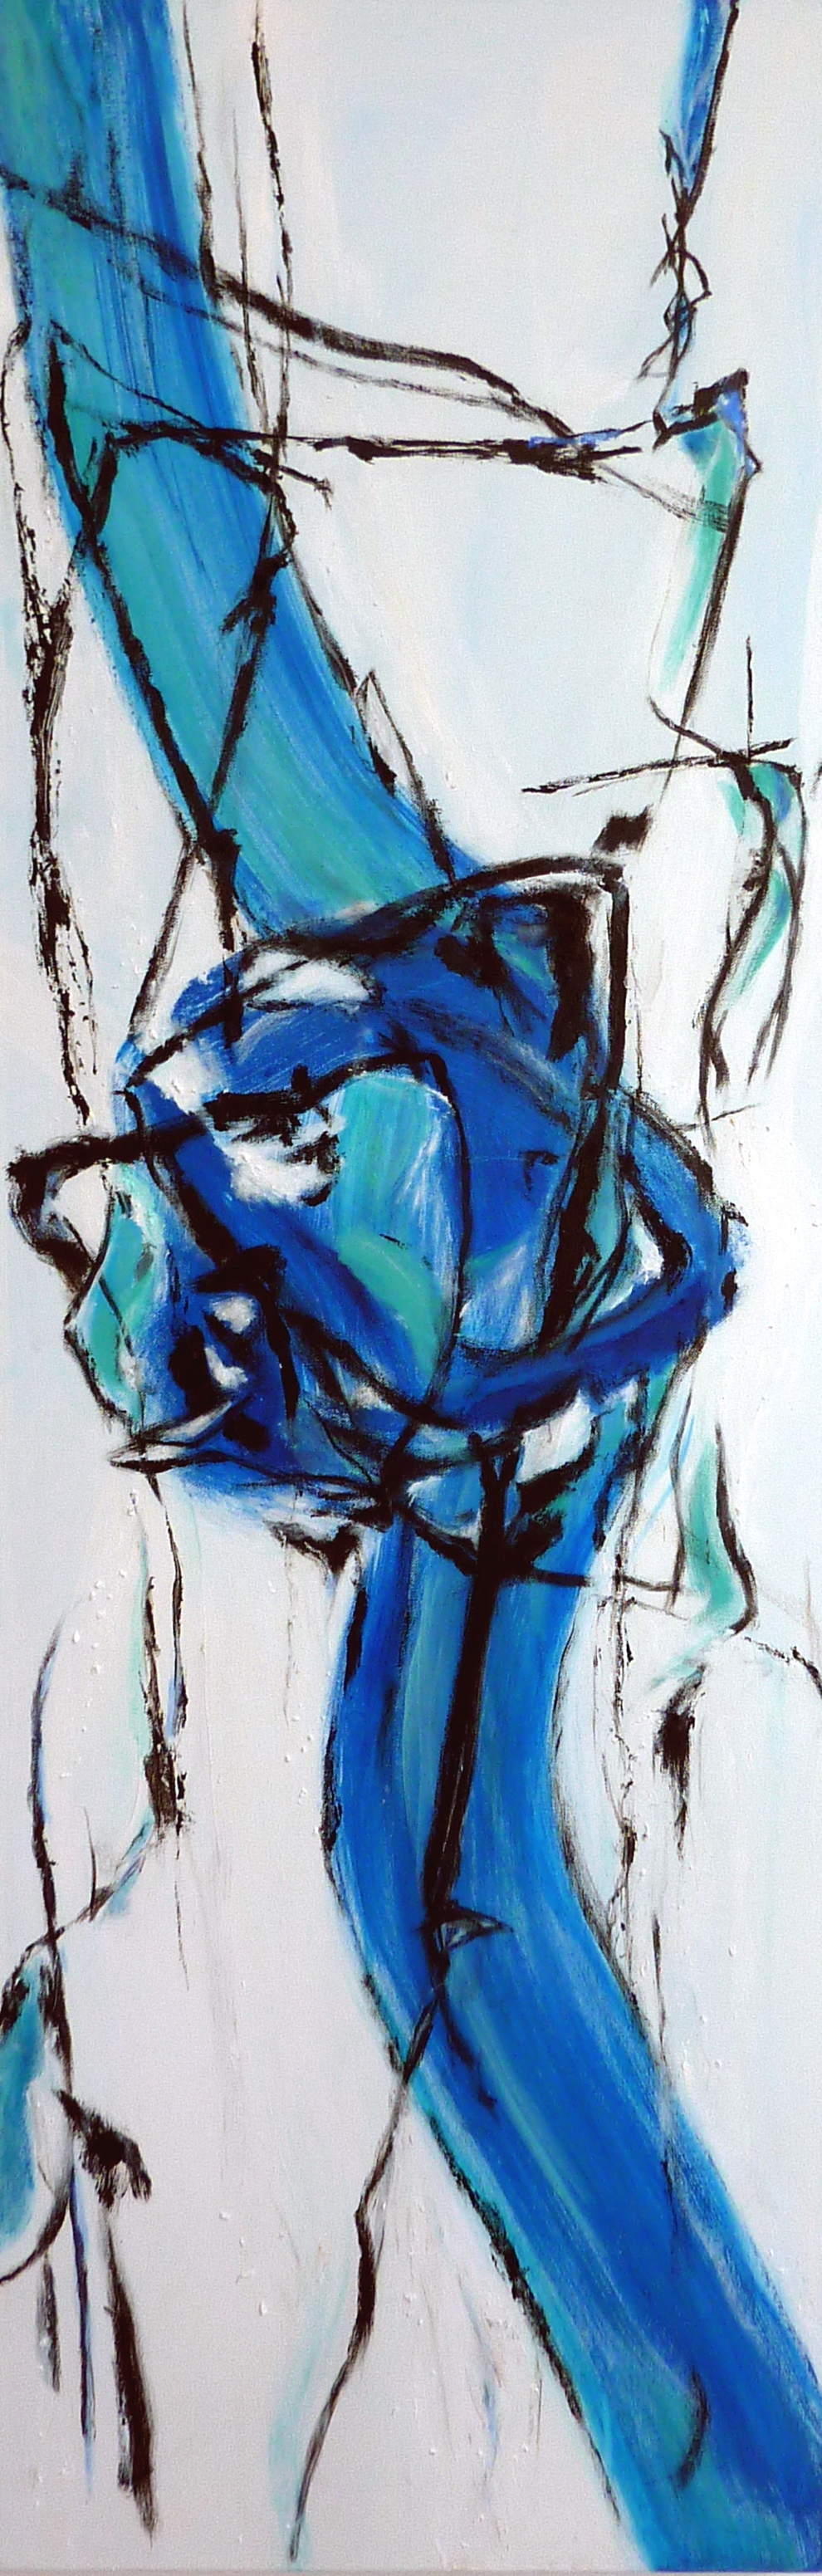 Modernes weiß blaues Gemälde auf Leinwand, abstrakt 